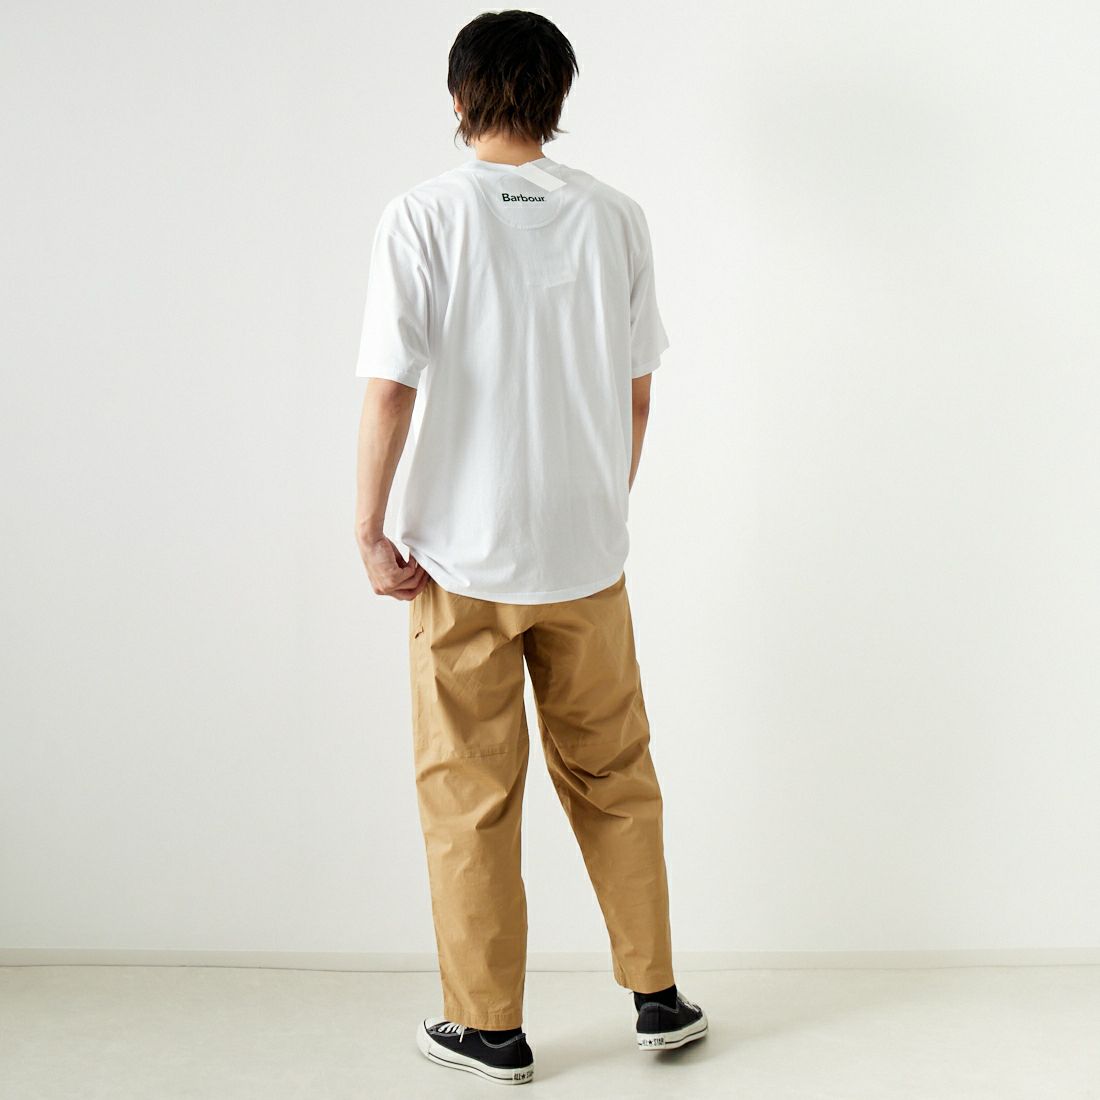 Barbour [バブアー] Grainger アーカイブ ロゴ リラックスフィット Tシャツ [MTS1259] WHITE &&モデル身長：182cm 着用サイズ：42&&